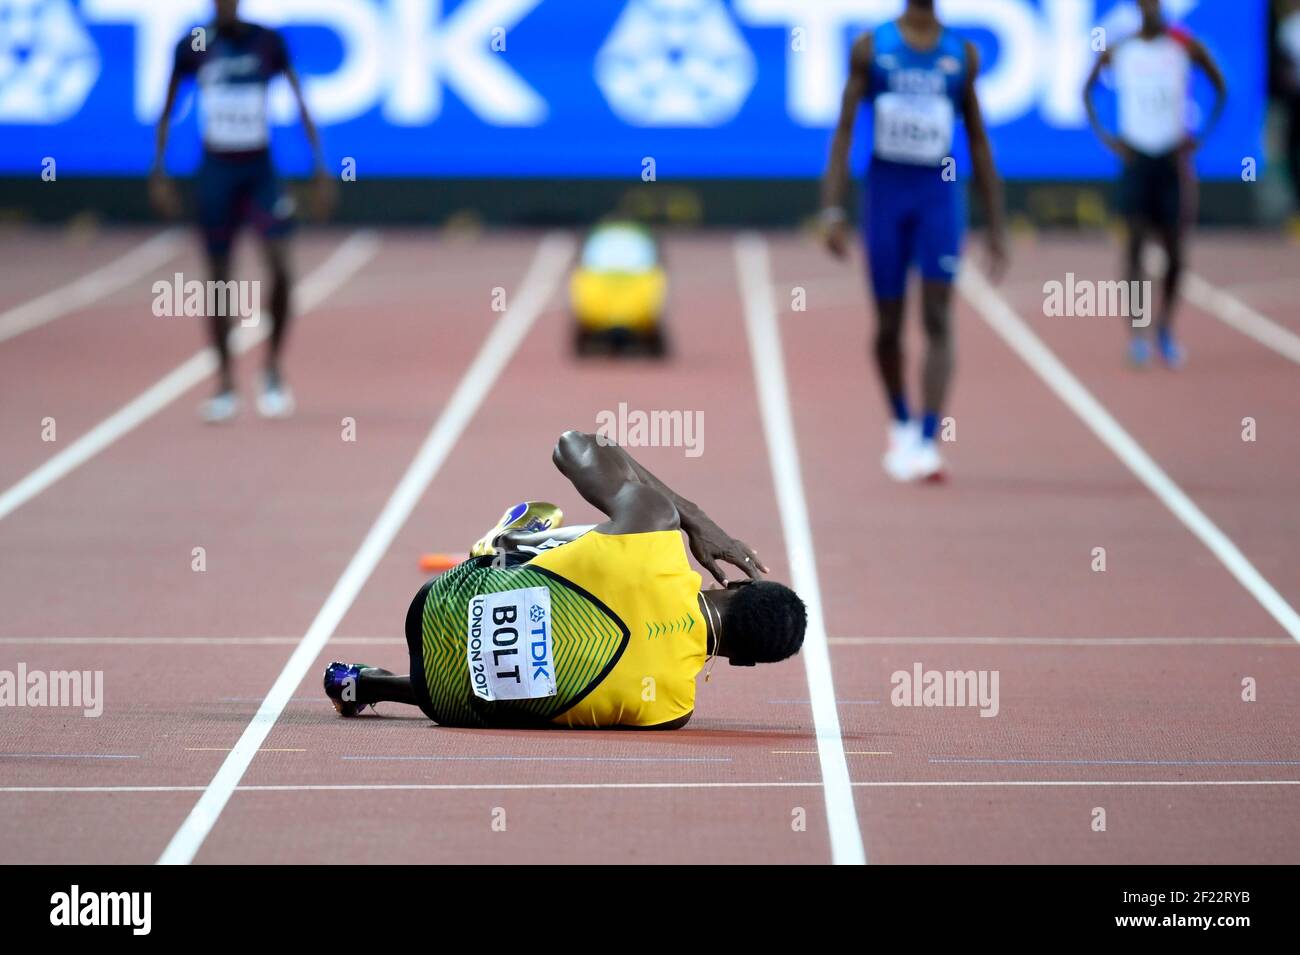 Usain Bolt (JAM) Verletzung in 4 x 100 Meter Staffel Männer während der Leichtathletik-Weltmeisterschaften 2017, im Olympiastadion, in London, Großbritannien, Tag 9, Am 12th. August 2017 - Foto Julien Crosnier/ KMSP / DPPI Stockfoto